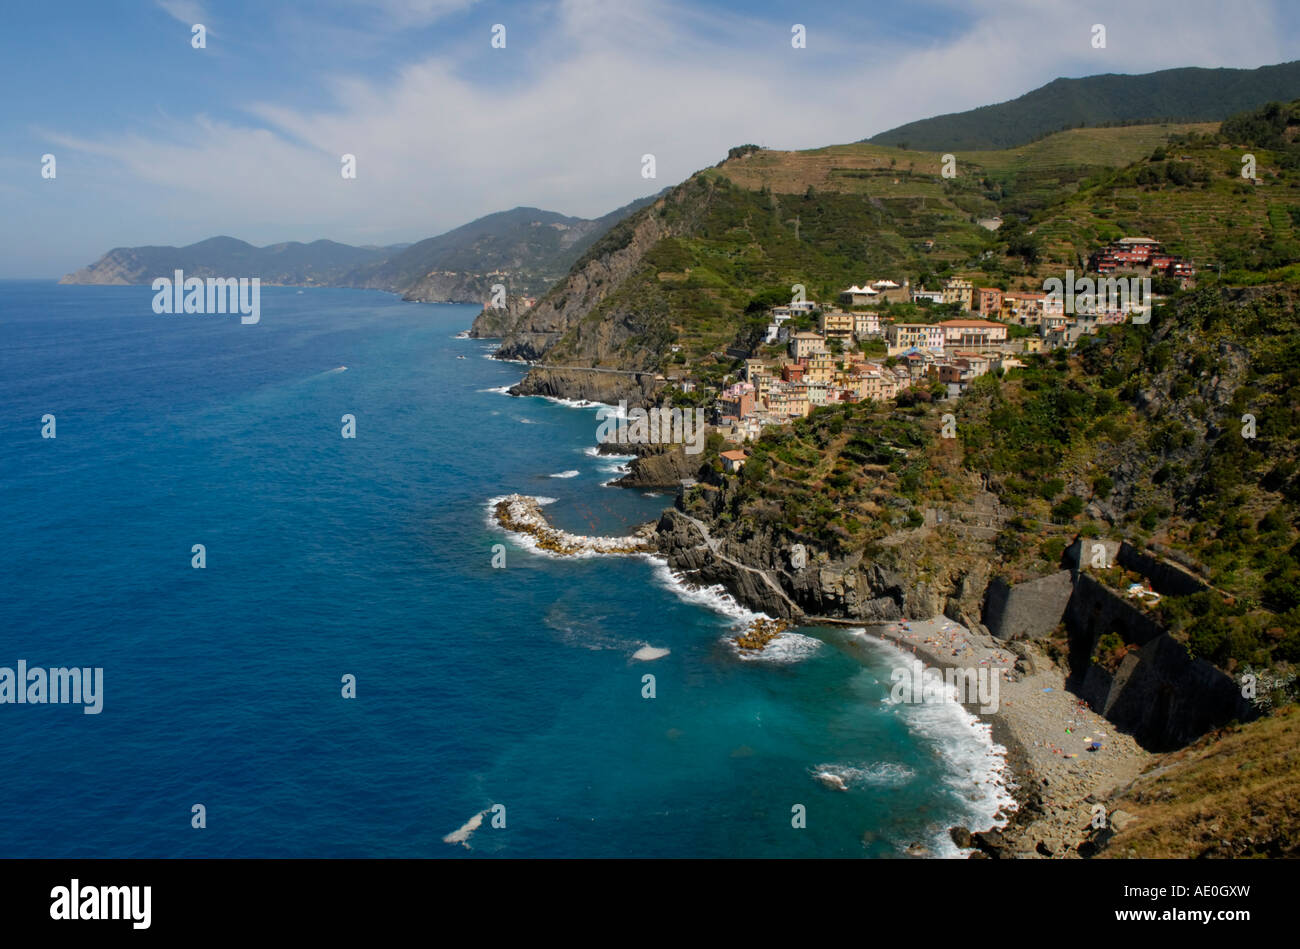 La costa di Cinque Terre guardando a nord. Il primo villaggio visto è Riomaggiore con la sua spiaggia in primo piano. Foto Stock